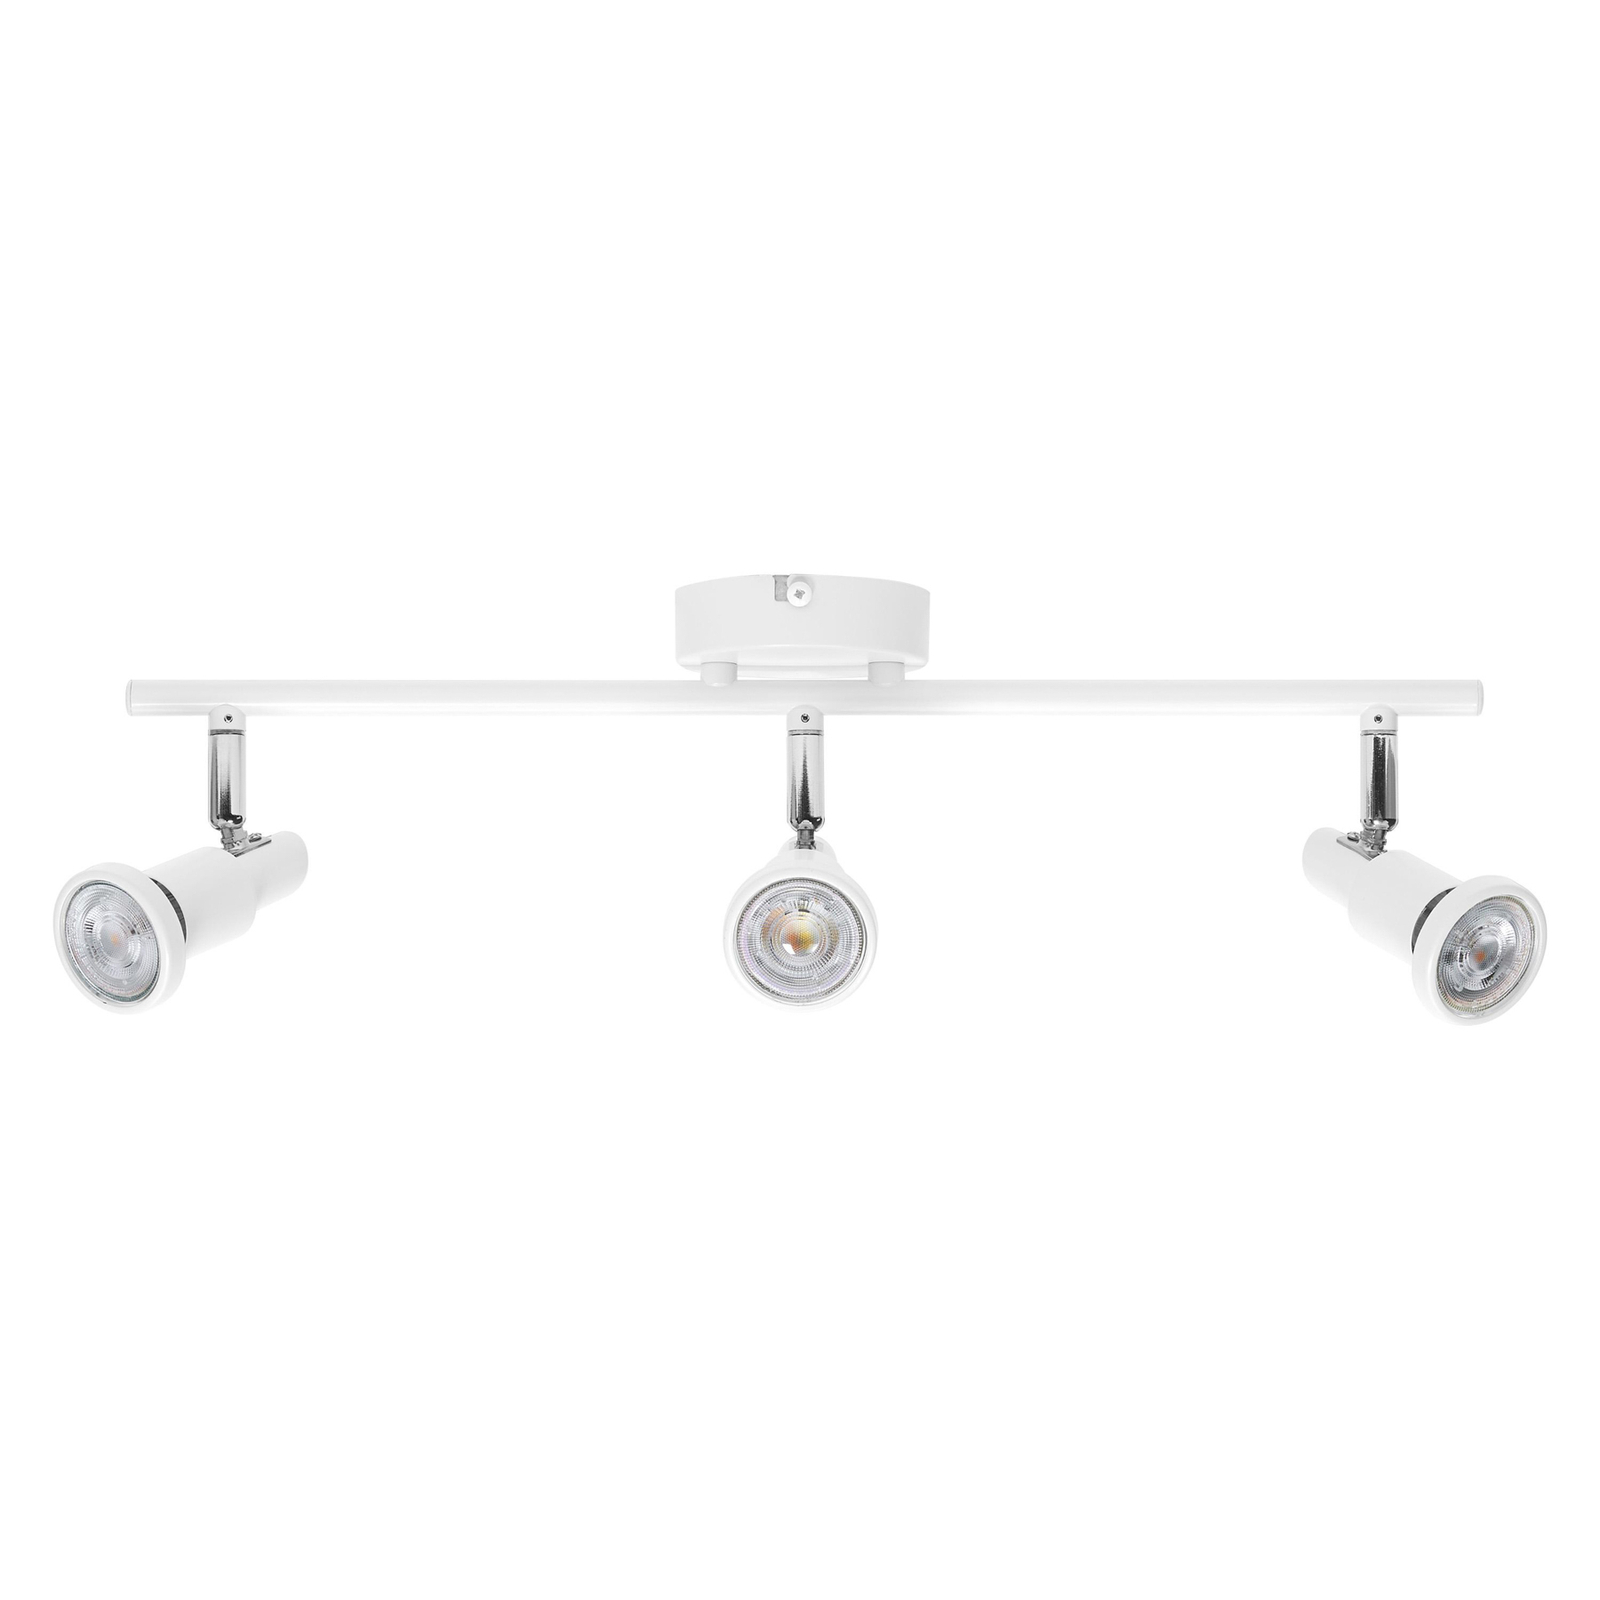 LEDVANCE LED downlight GU10, 3-bulb, white